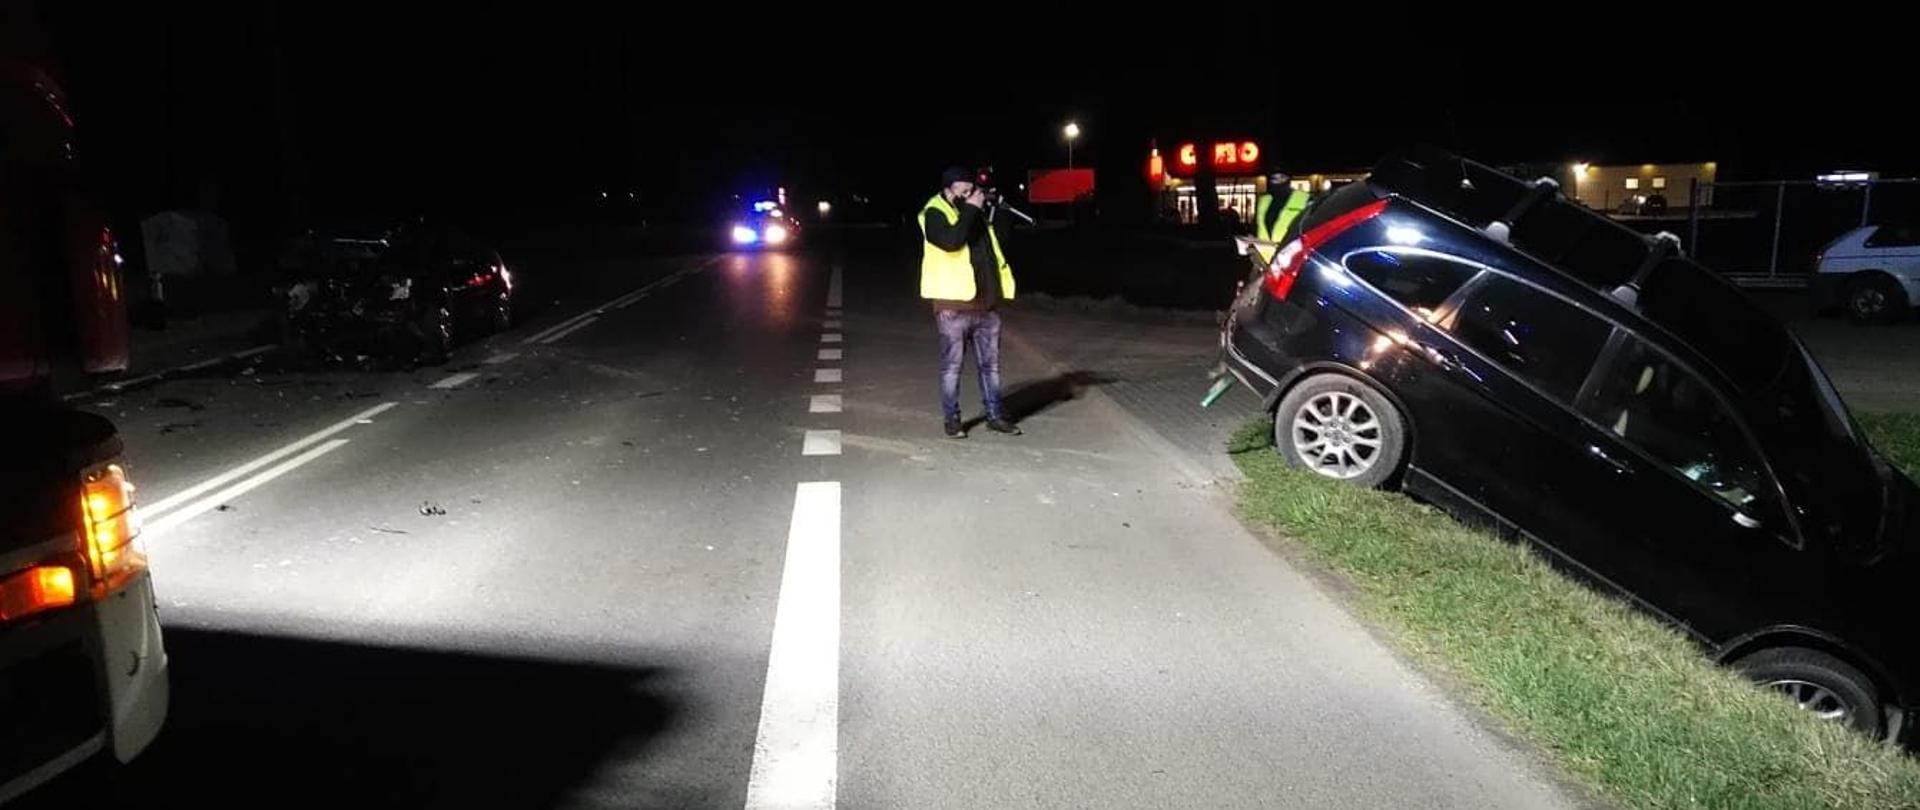 Zdjęcie przedstawia rozbity samochód który z powodu uderzenia przez inny samochód wjechał do rowu przy drodze. Na drodze stoi policjant który robi zdjęcia zdarzenia.jest pora nocna.